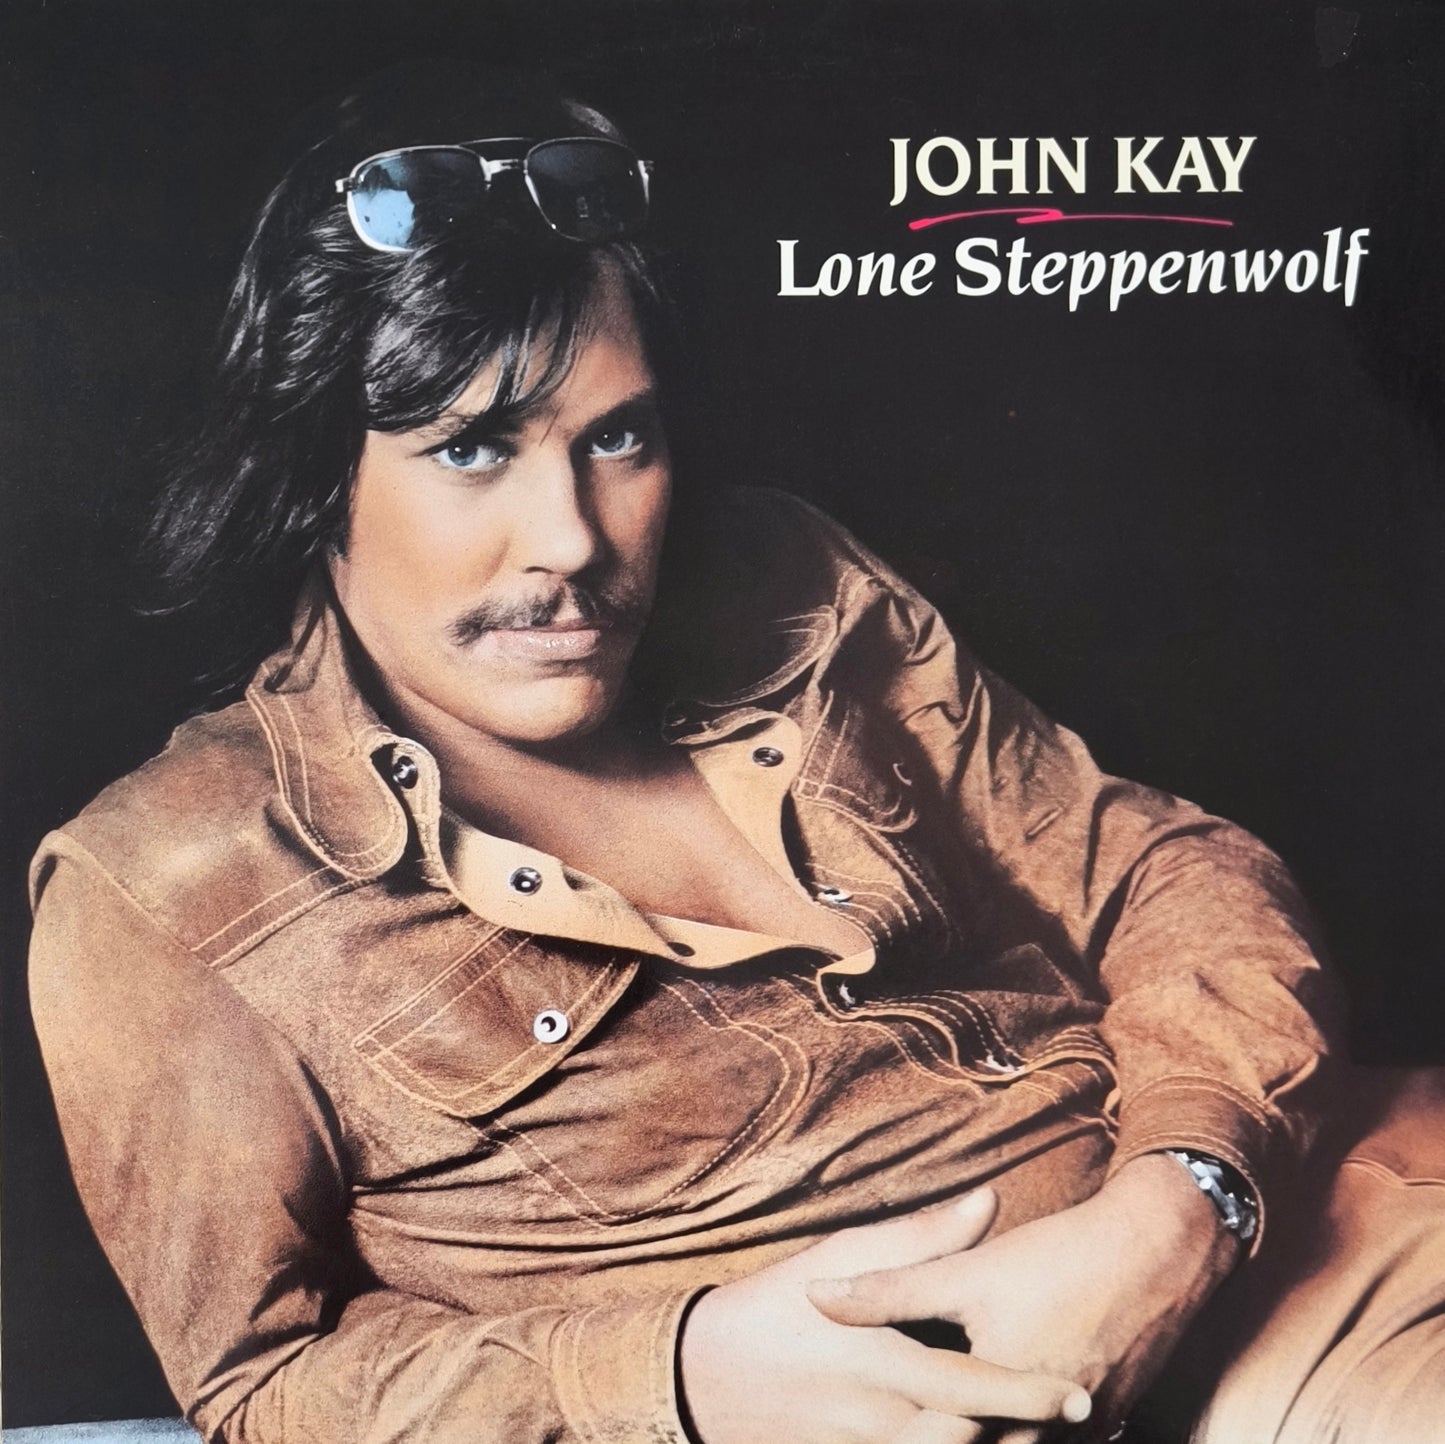 JOHN KAY - Lone Steppenwolf